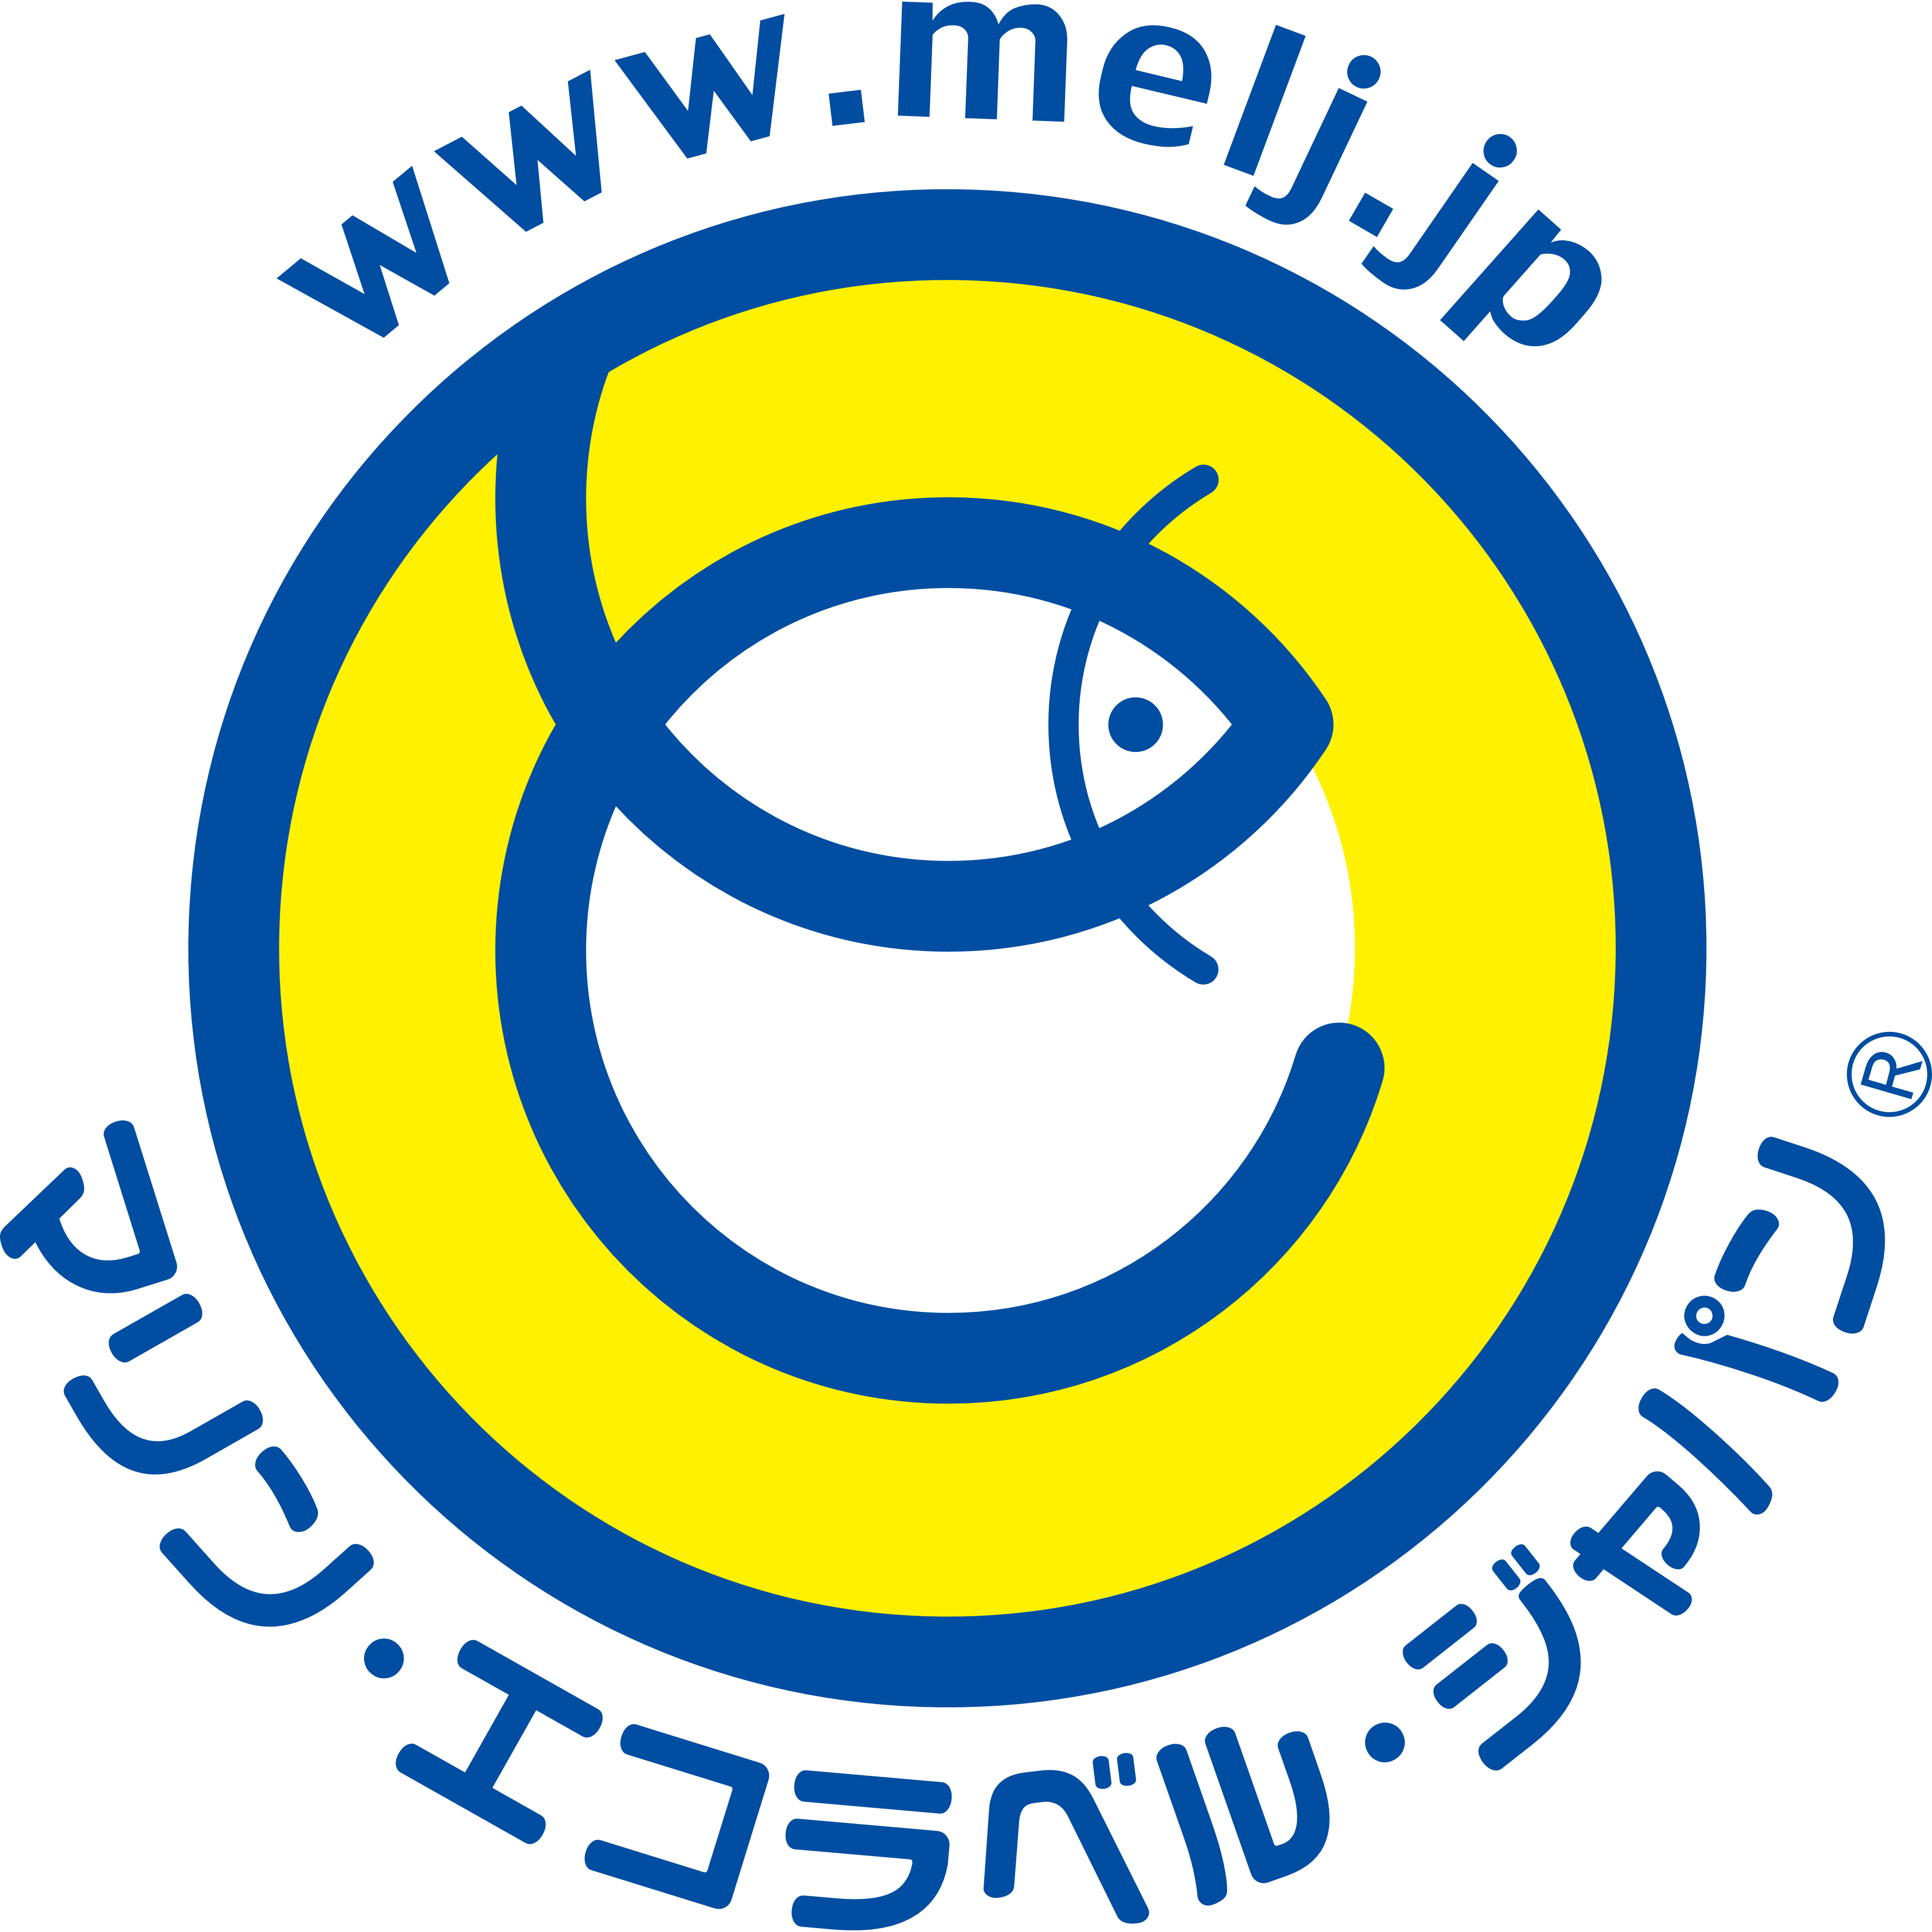 認証事業者各位 移行期間中における認証ロゴマーク使用について マリン エコラベル ジャパン 未来につなげよう海と魚と魚食文化